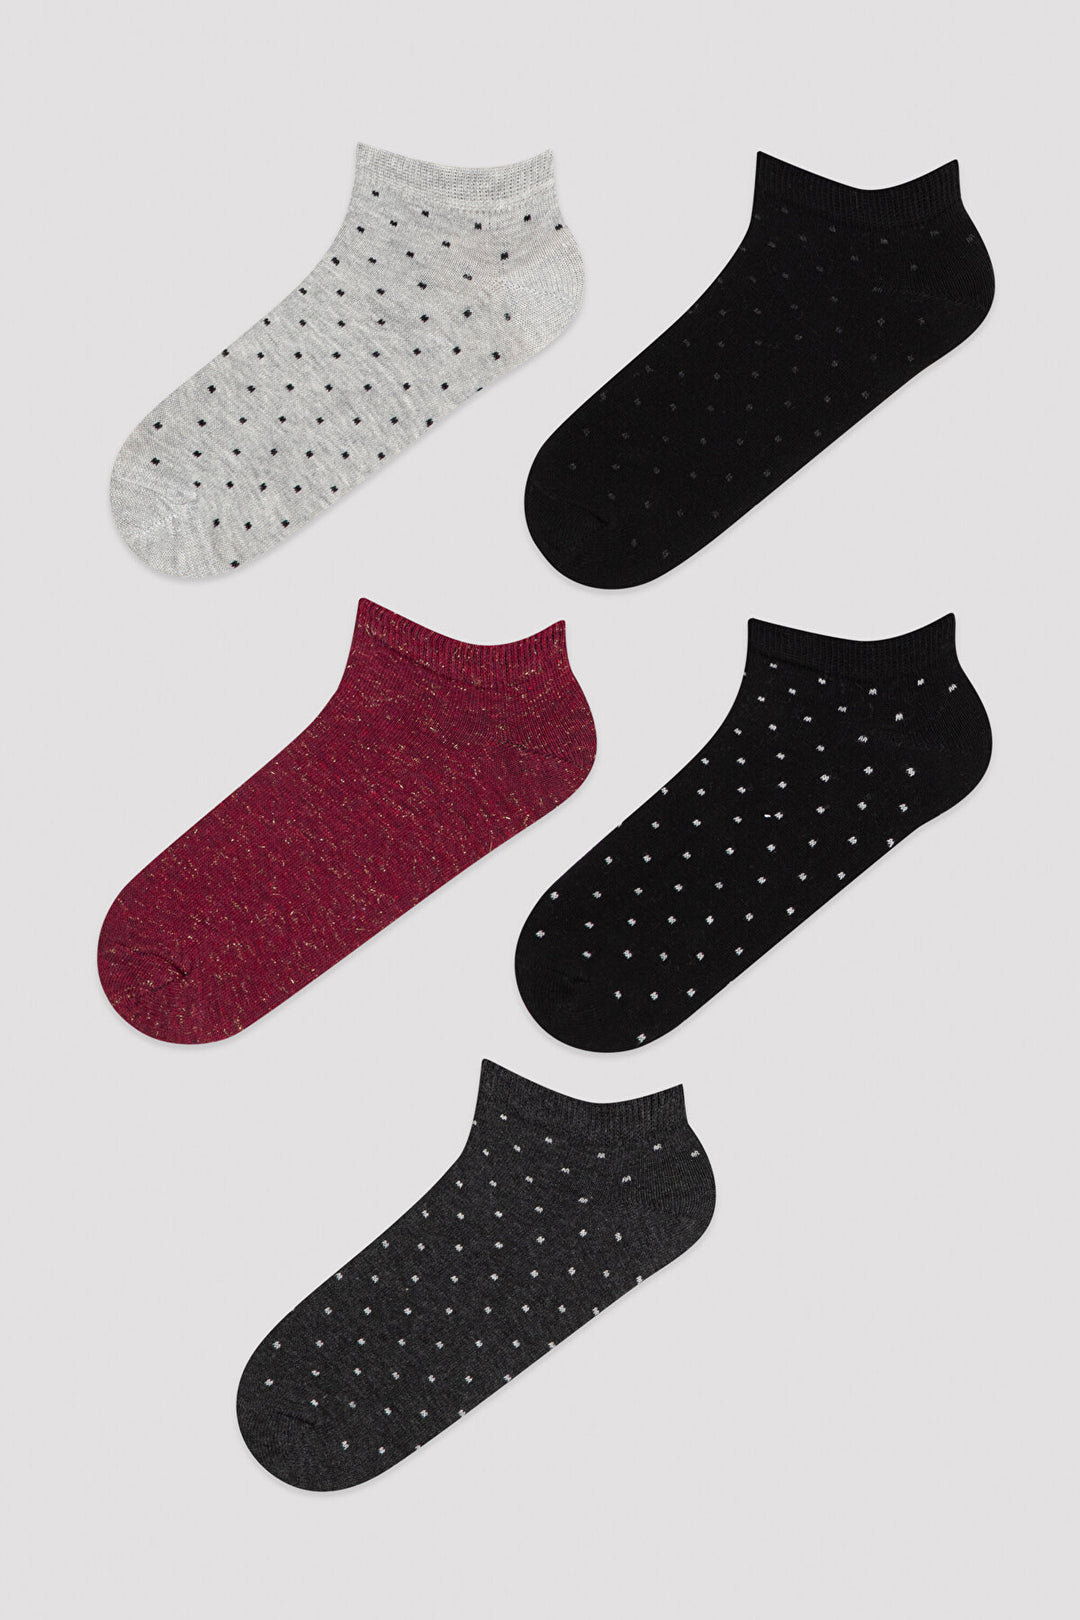 Multi Colour Rudy 5In1 Liner Socks